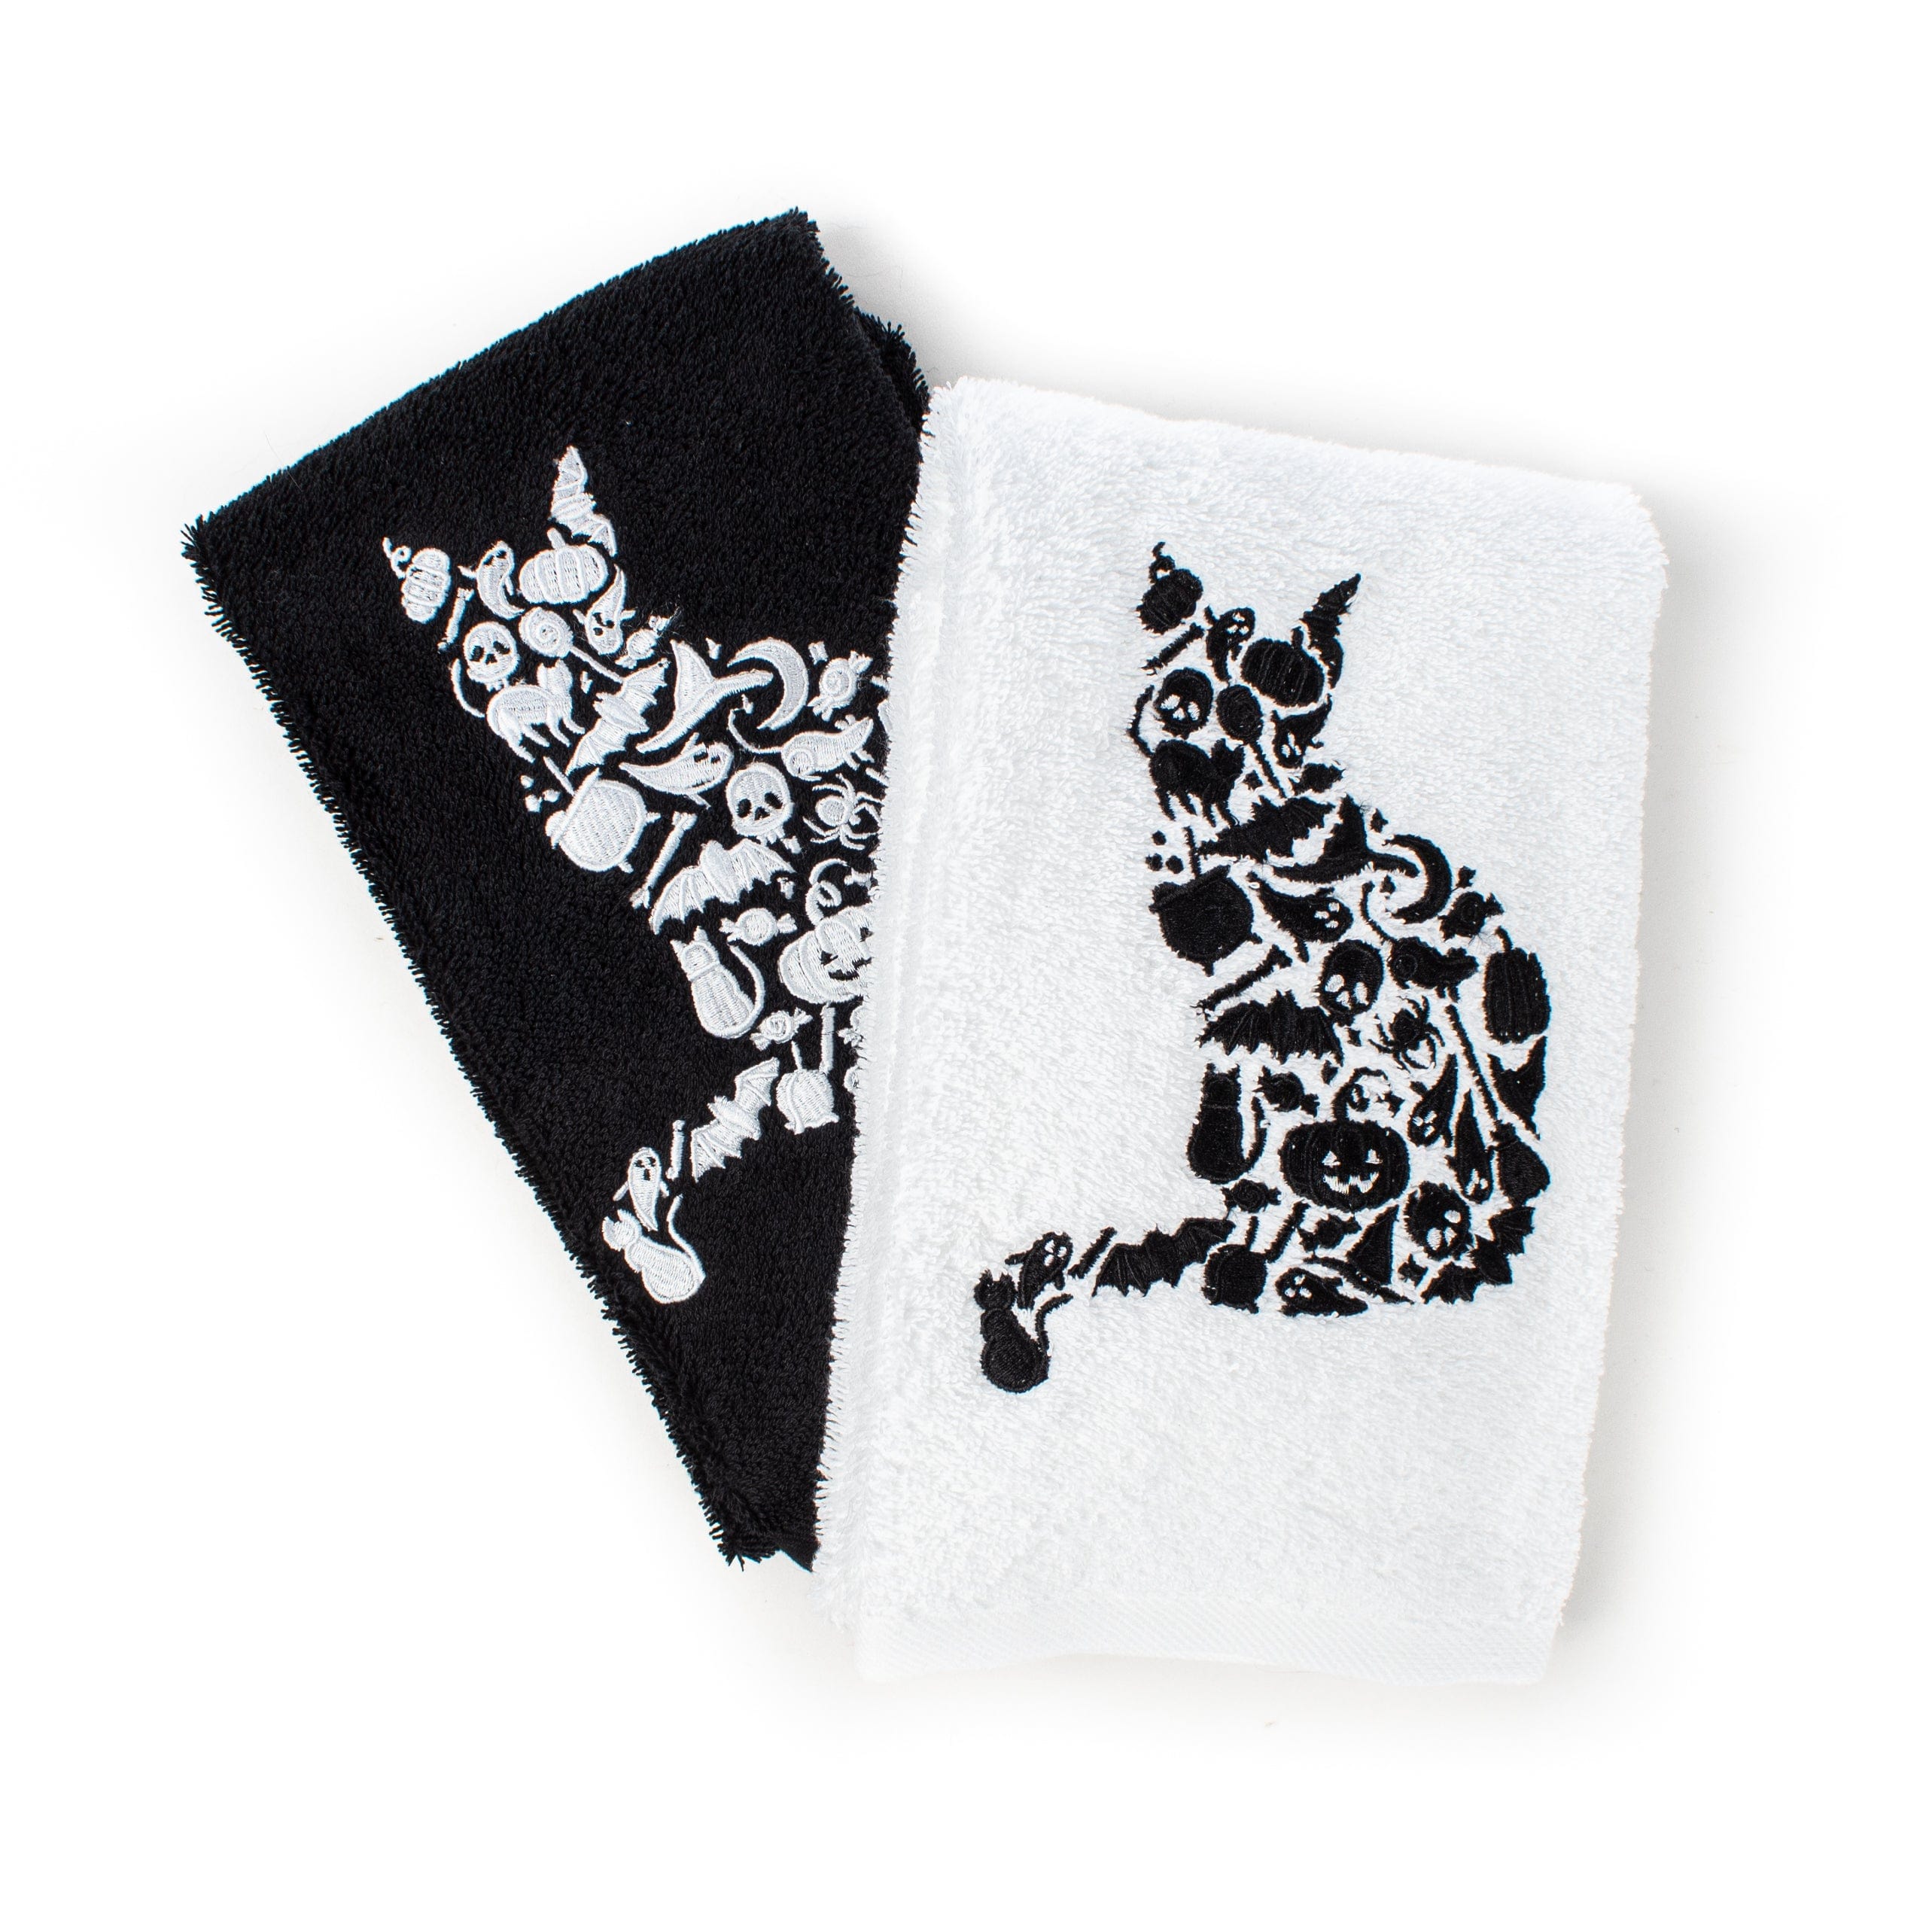 https://triple-t-studios.com/cdn/shop/products/triple-t-studios-bath-towels-washcloths-halloween-cat-hand-towel-37814295068906_5000x.jpg?v=1660486206